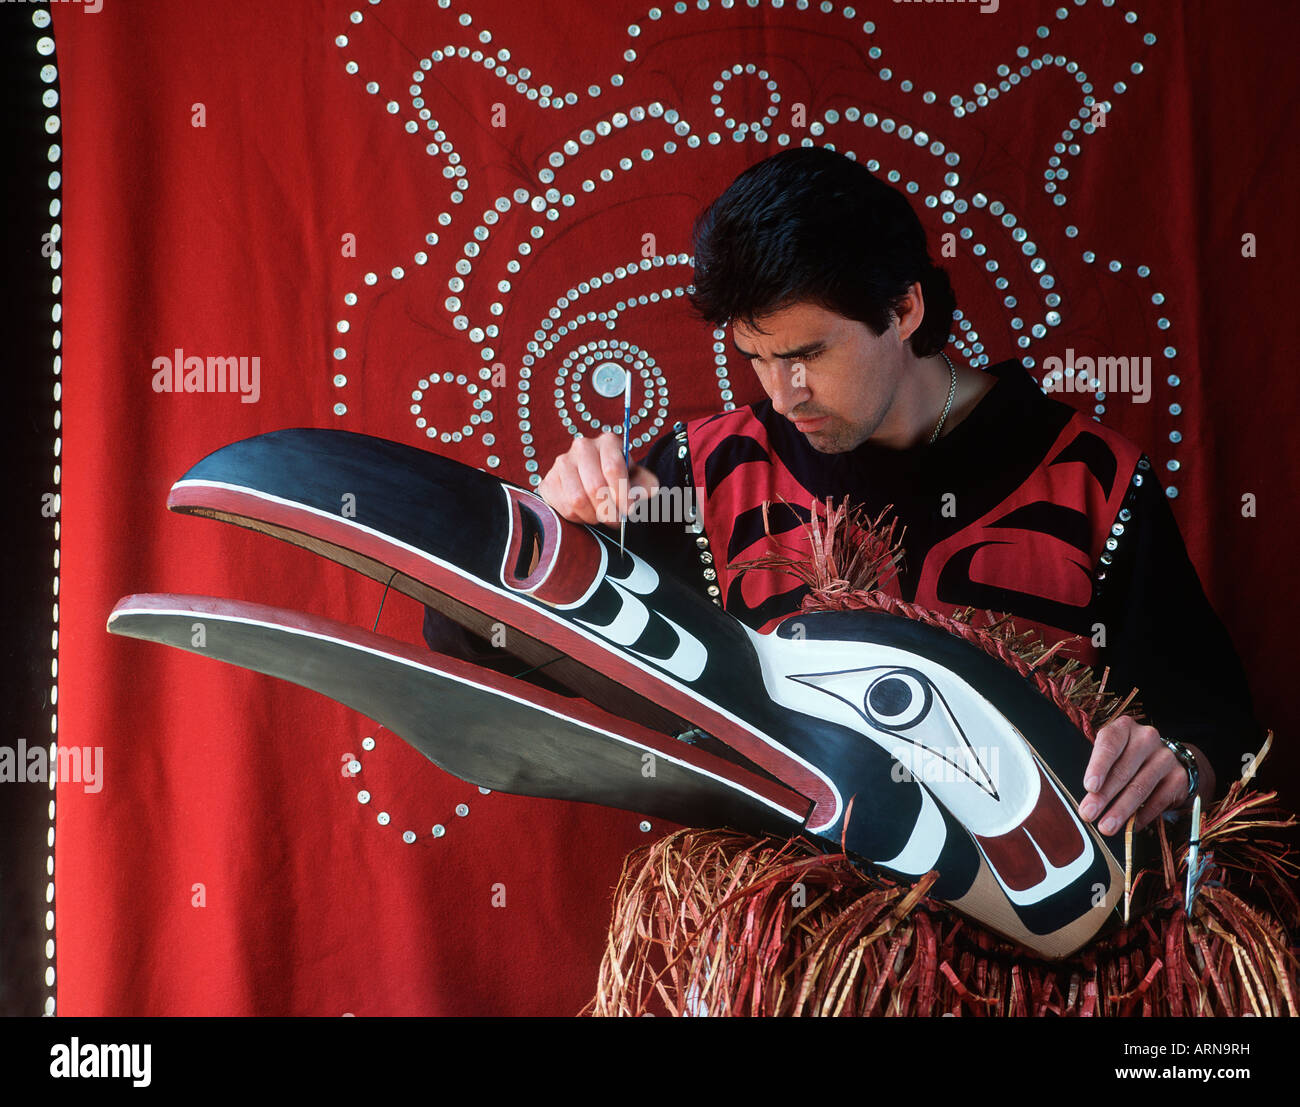 Kwakwaka Handwerker malt zeremonielle Maske, Vancouver Island, British Columbia, Kanada. Stockfoto